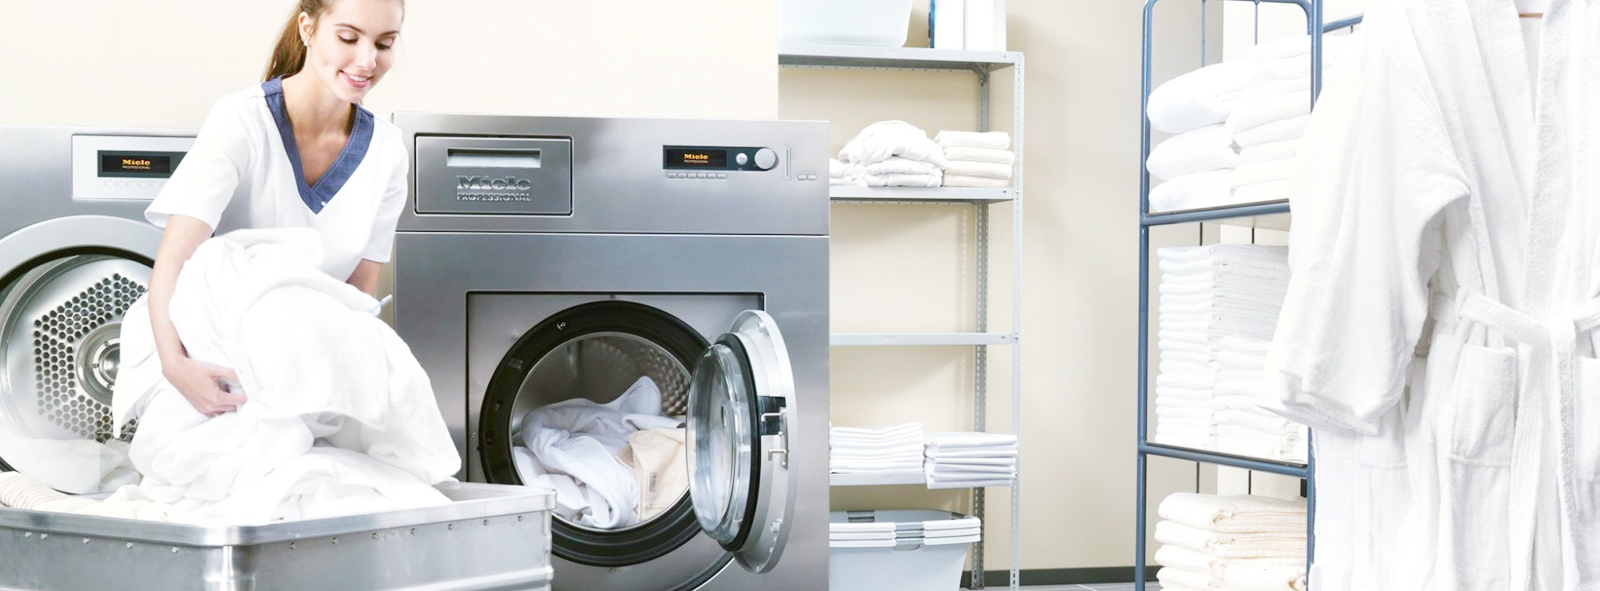 Chương trình khuyến mãi OFF 35% đến từ Japan Laundry.